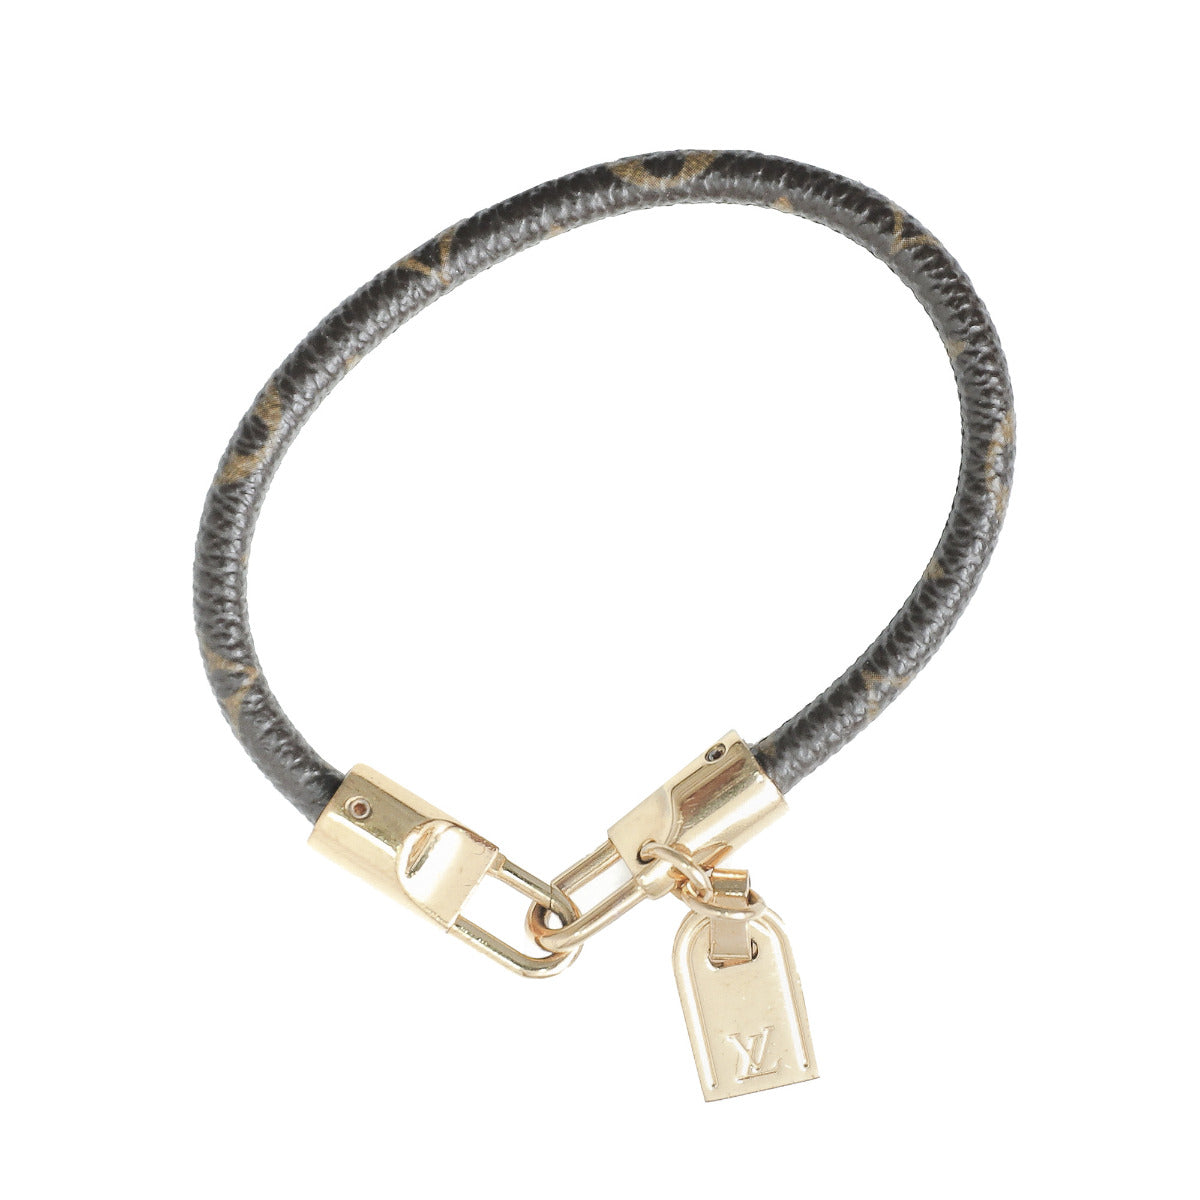 Louis Vuitton Bracelet Monogram Luck It